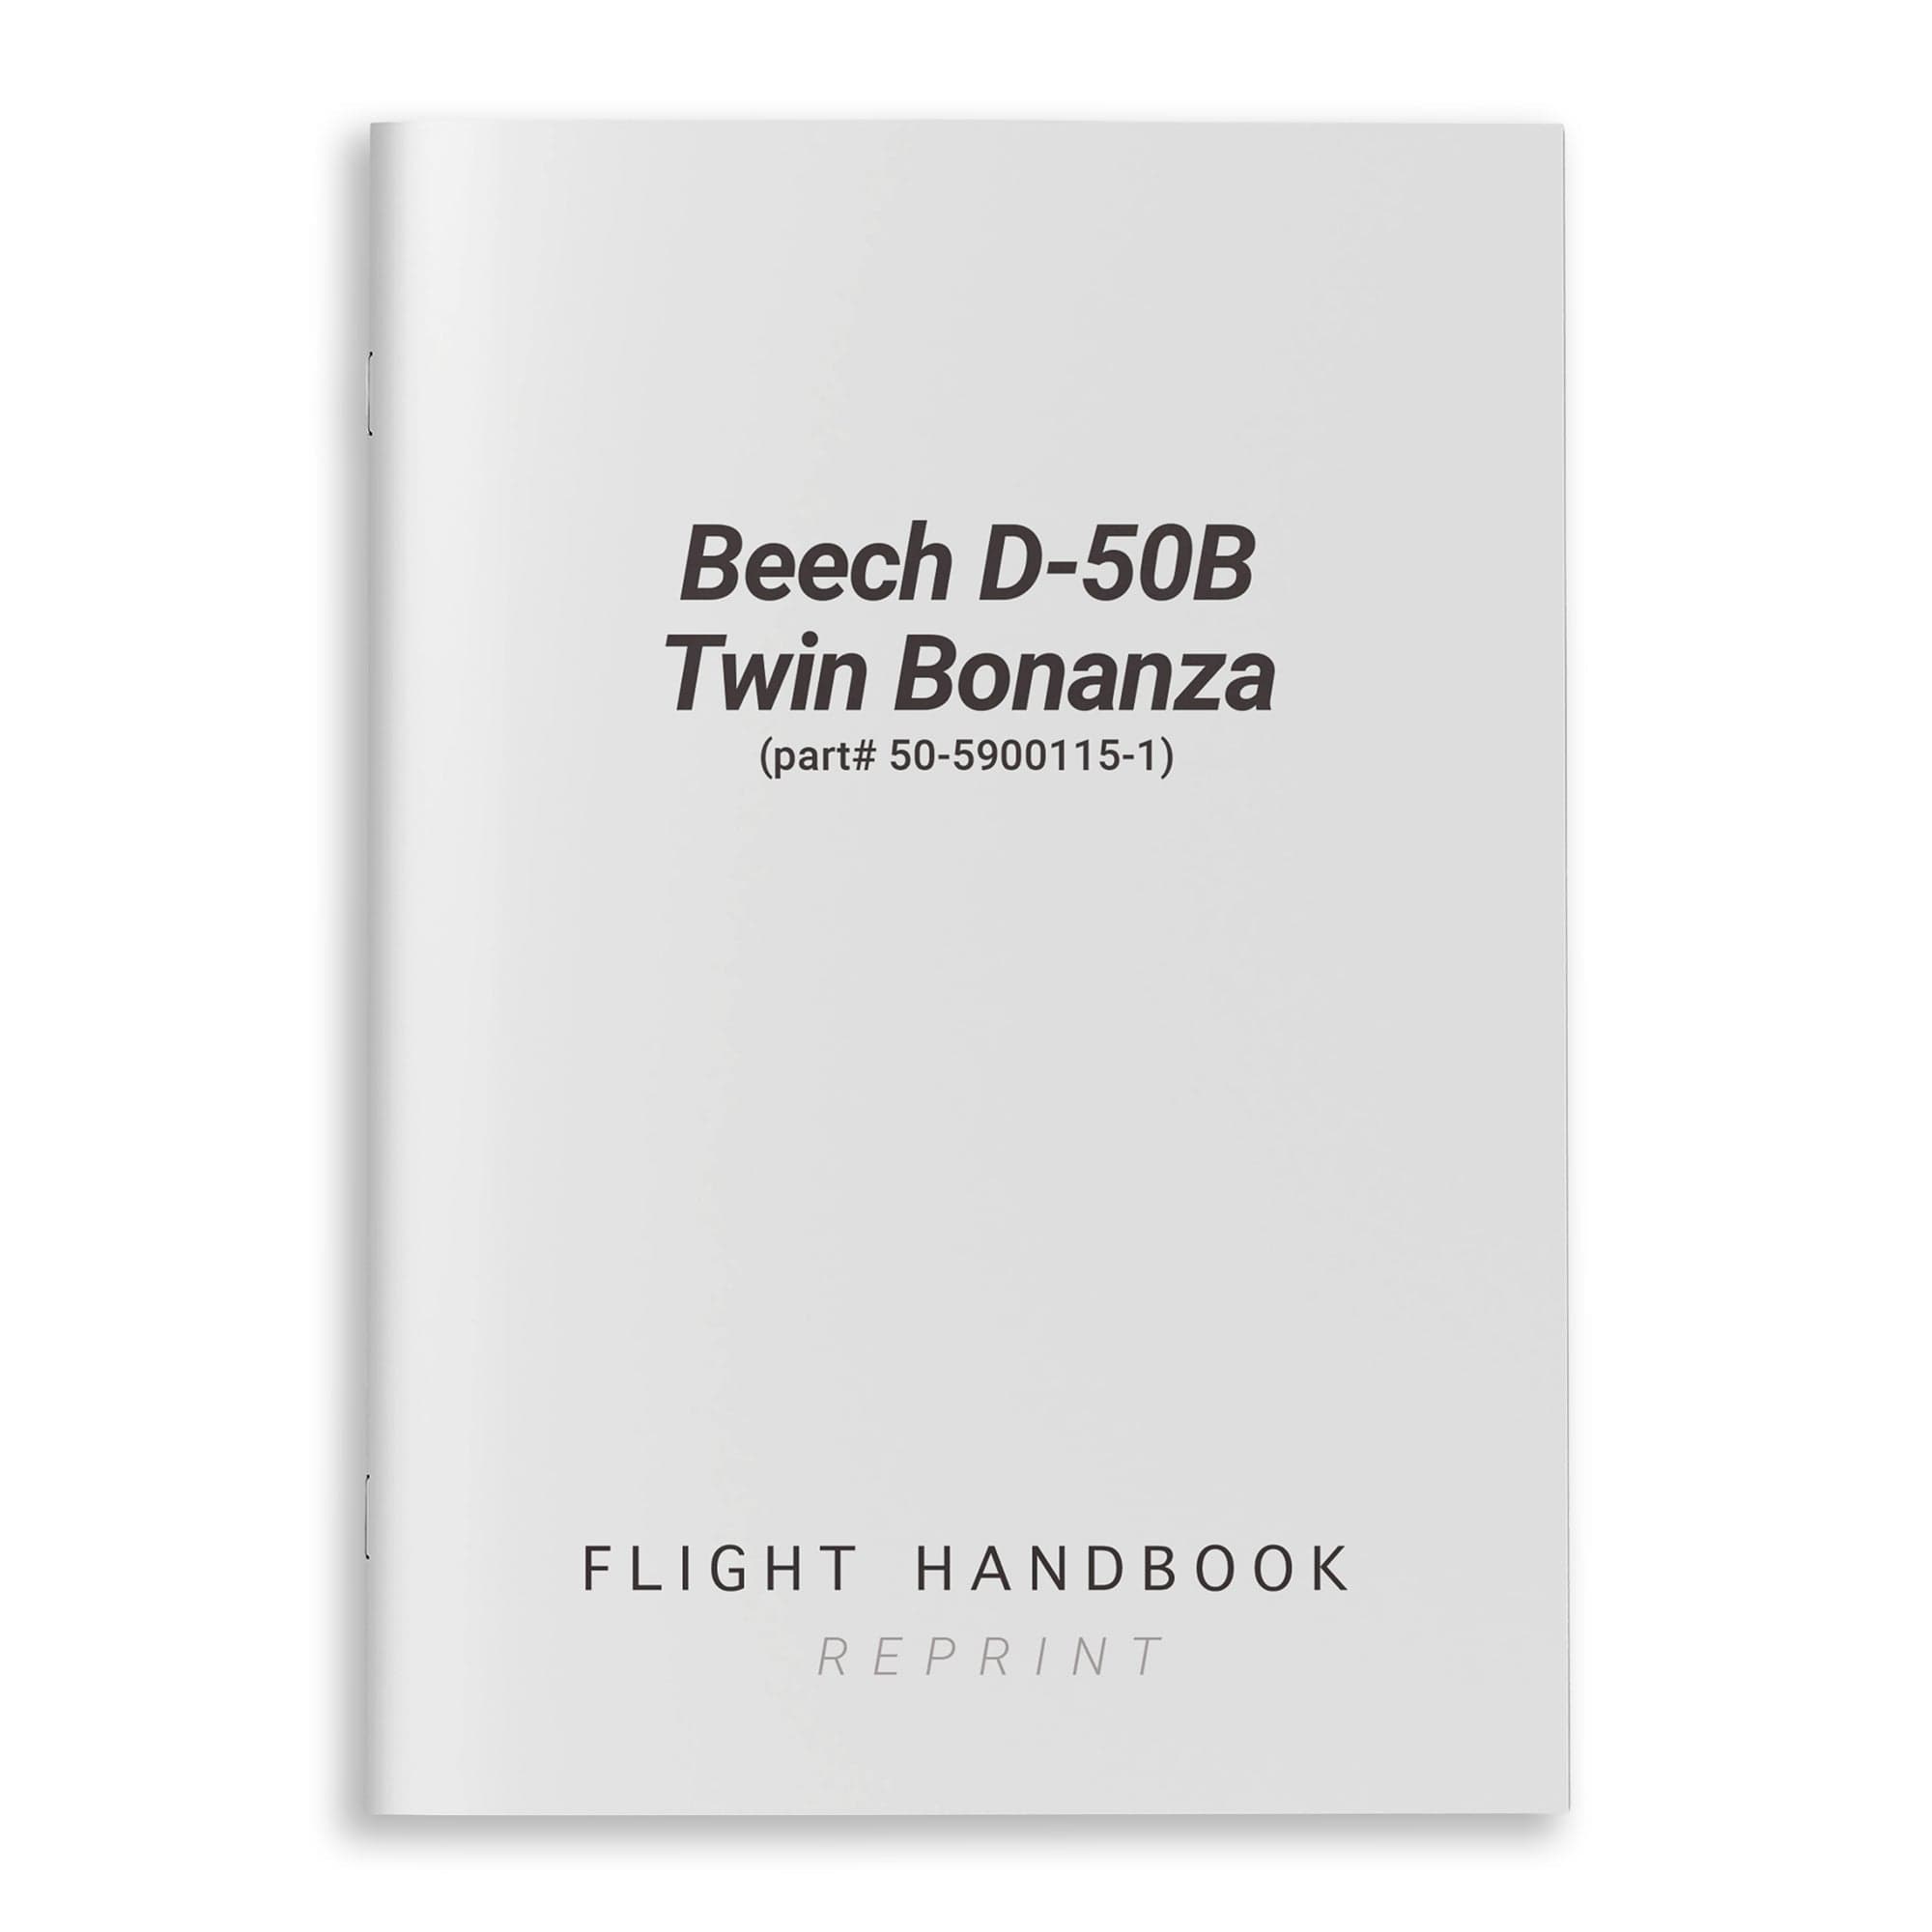 Beech D-50B Twin Bonanza Flight Handbook (part# 50-5900115-1)